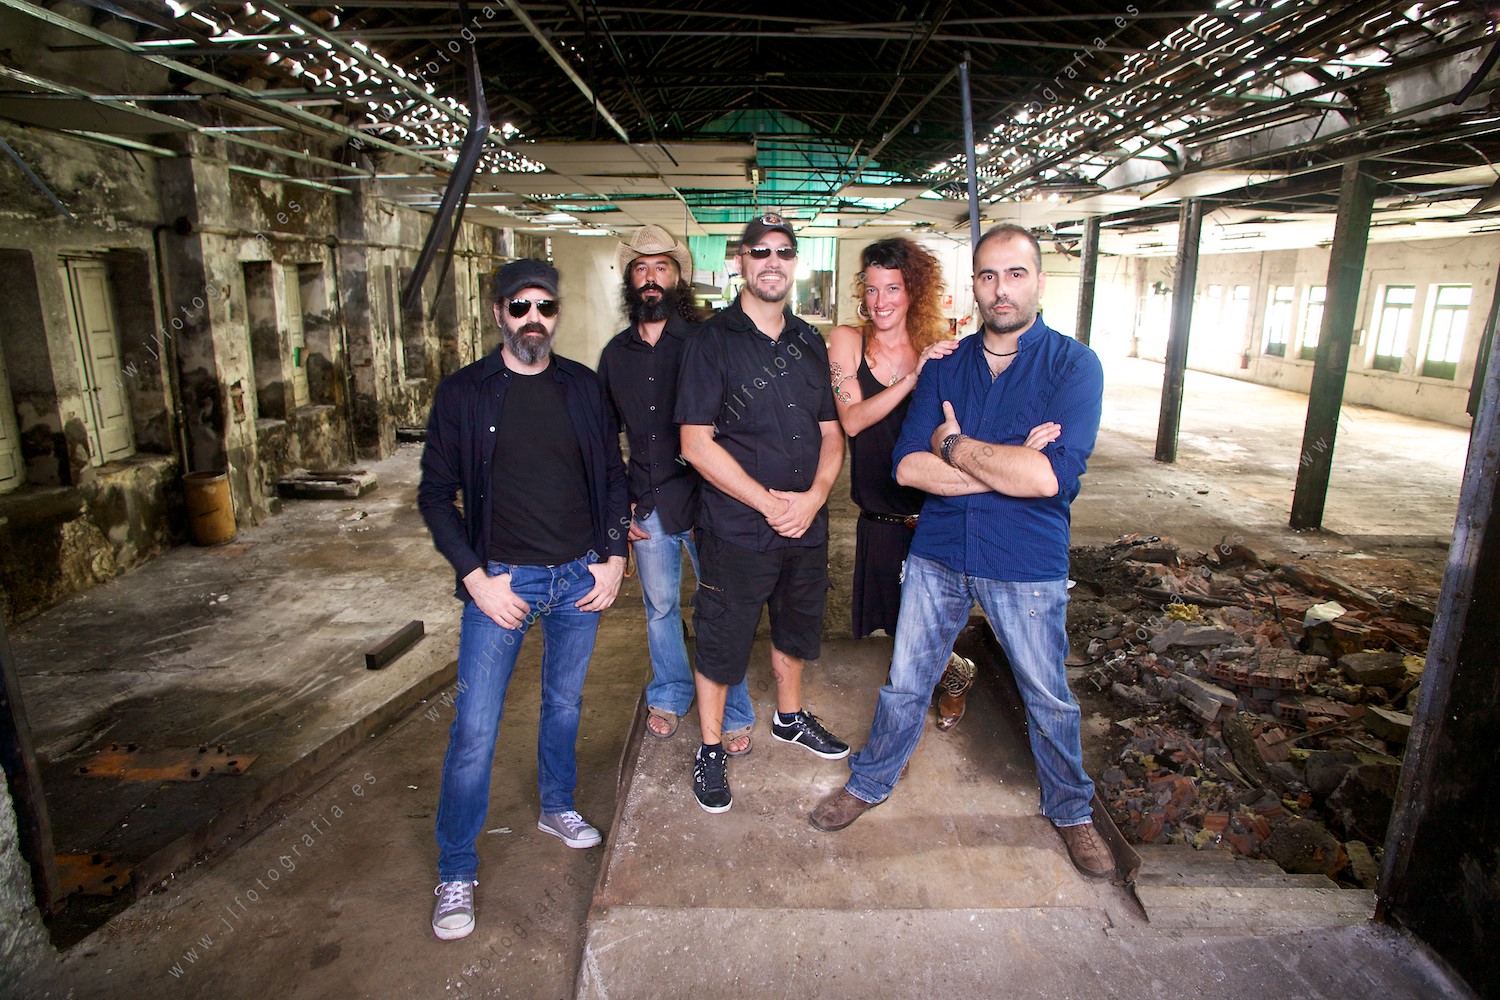 El grupo de rock, Jardín Infierno posando para el nuevo disco, en una fábrica abandonada